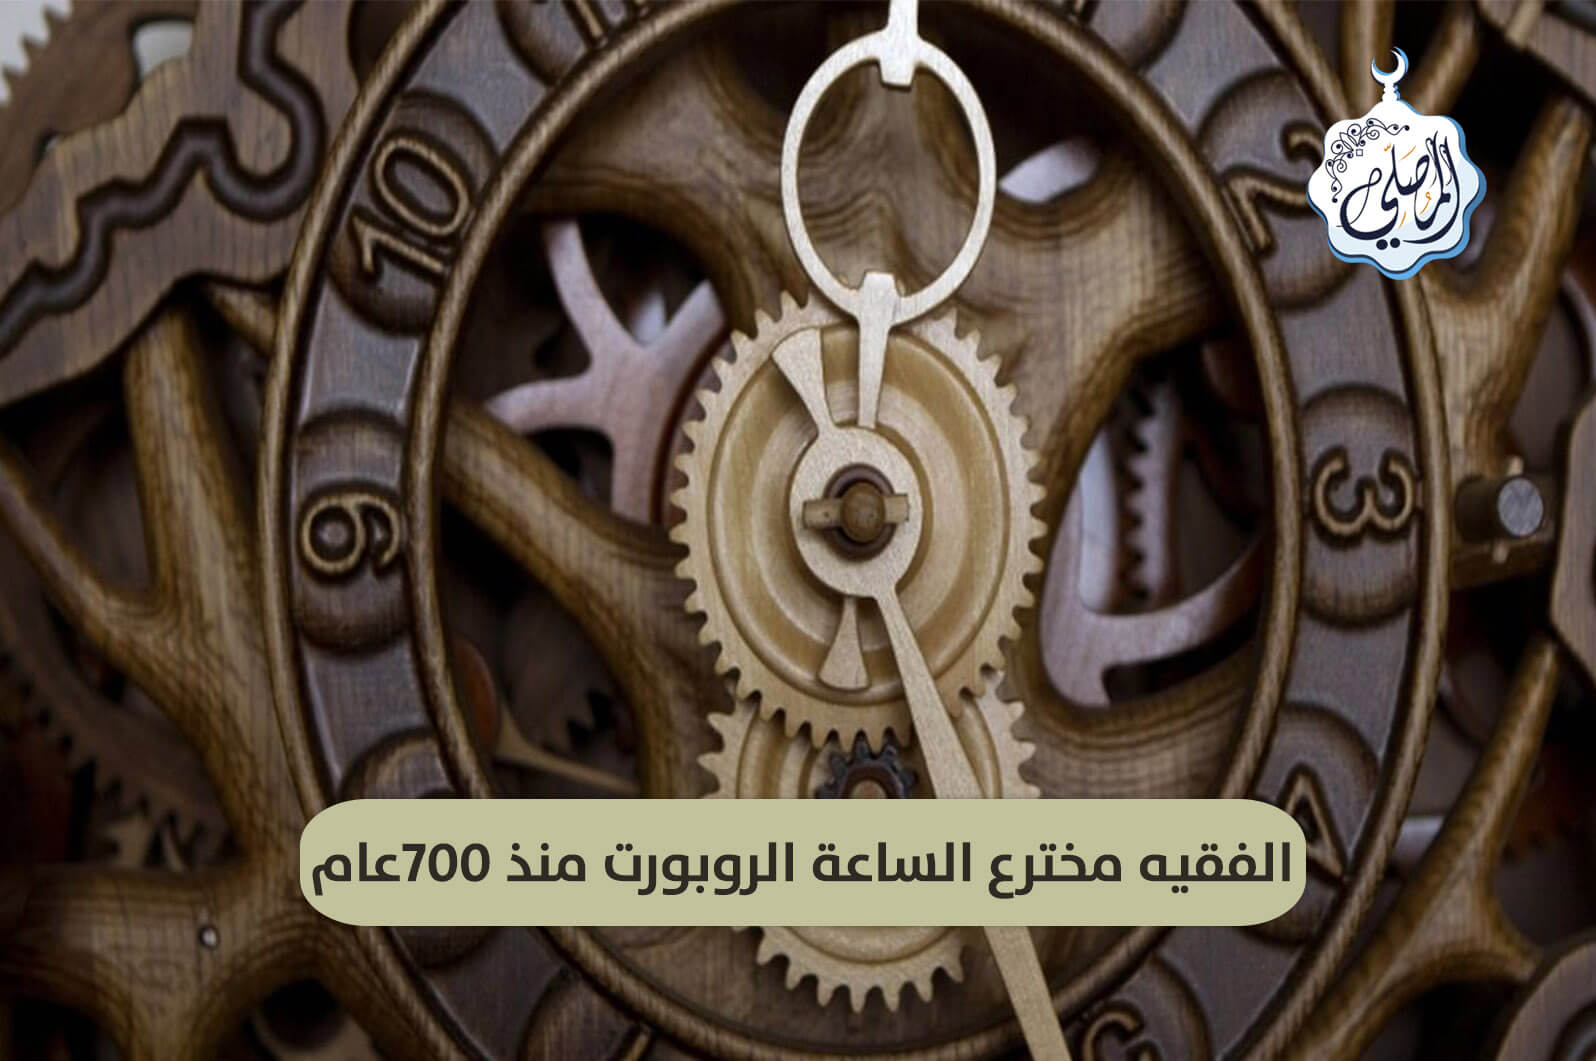 عالم وفقيه وأديب يخترع ساعة بروبورت منذ 700عام!